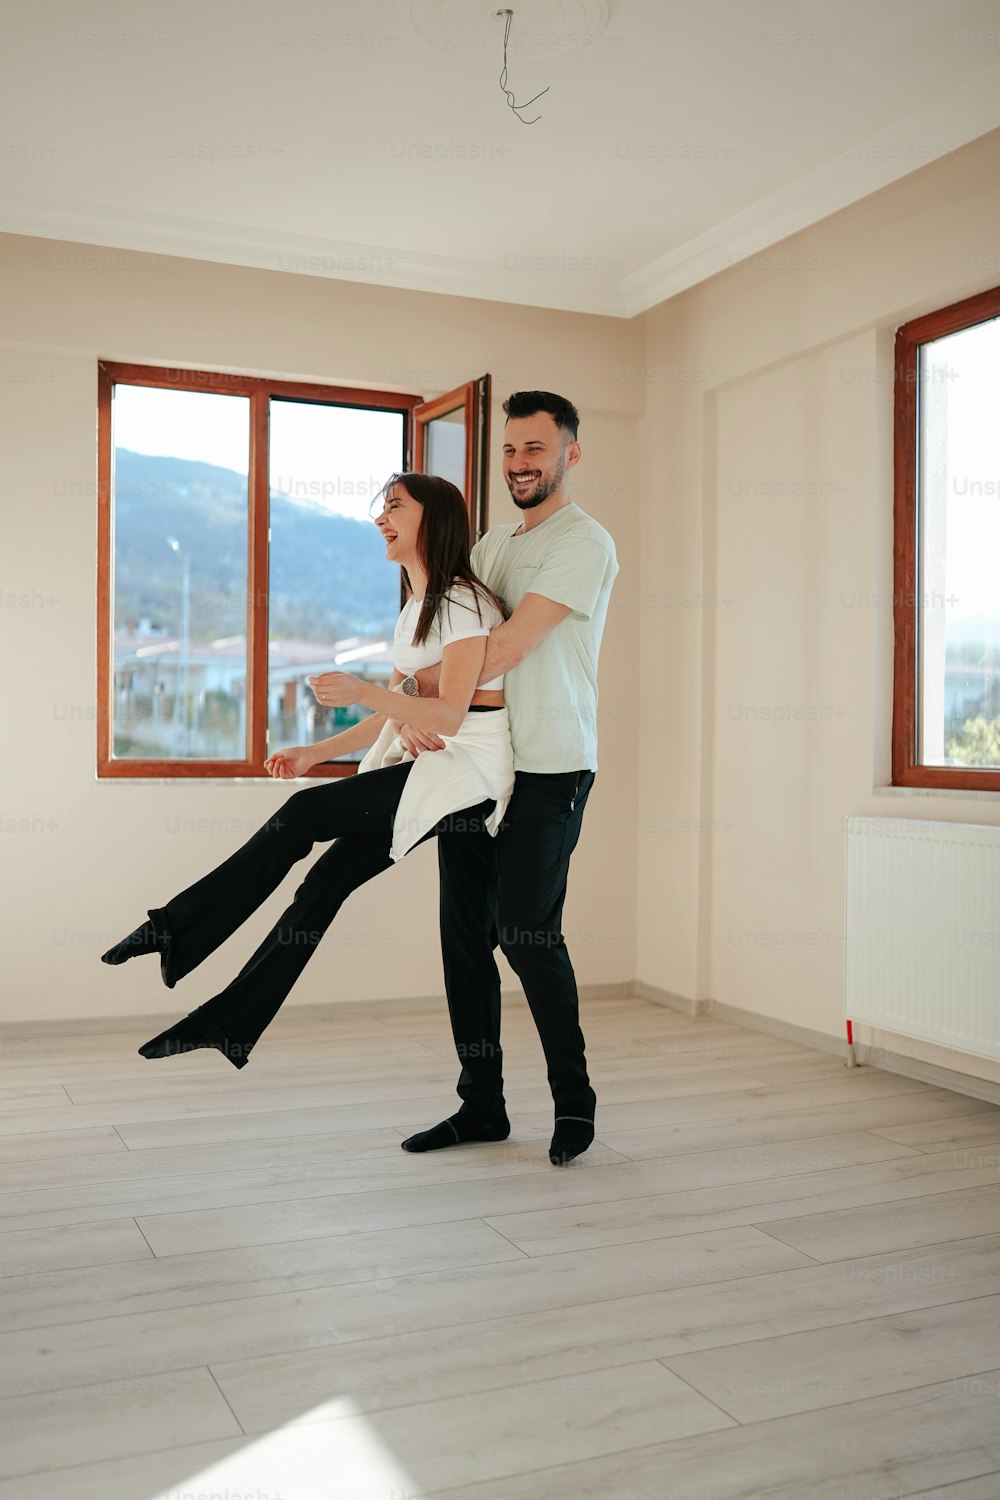 Un homme et une femme dansent dans une pièce